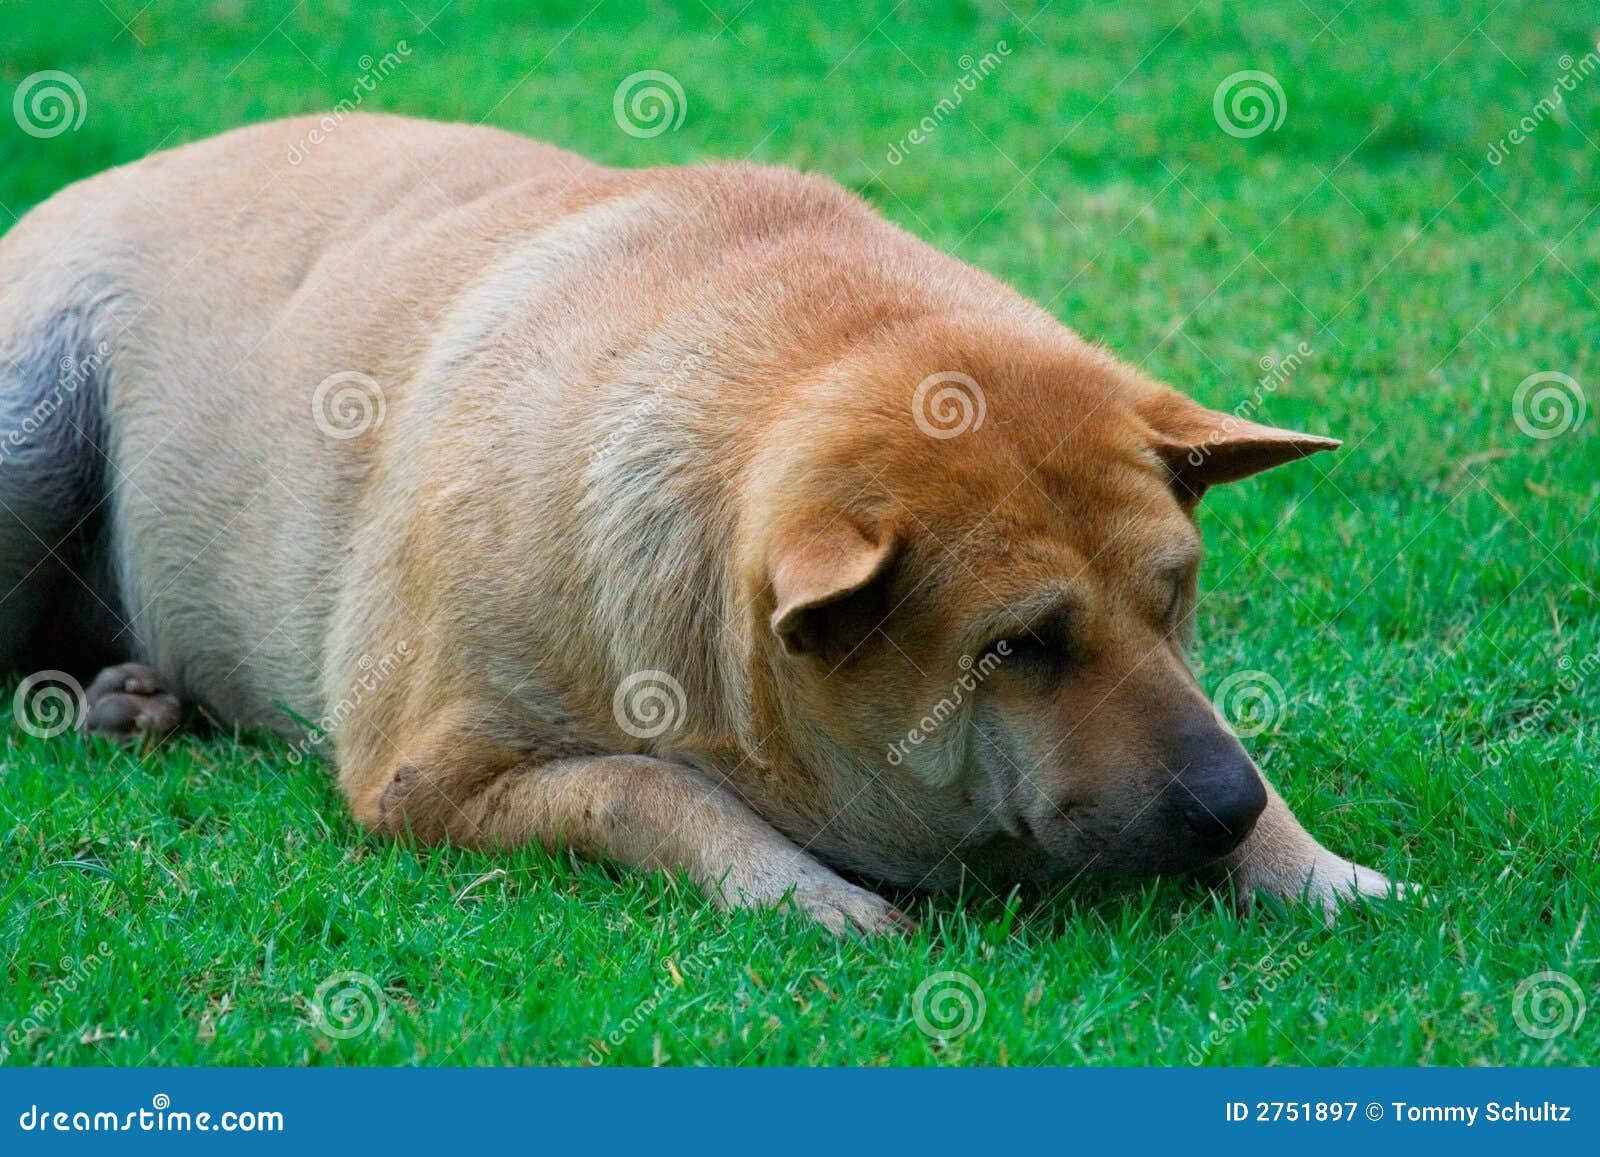 Vermoeid of gedeprimeerd. Gedeprimeerde, te zware of vermoeide hond die droevig terwijl het liggen op een groen grasgazon kijken. Zaal voor tekst